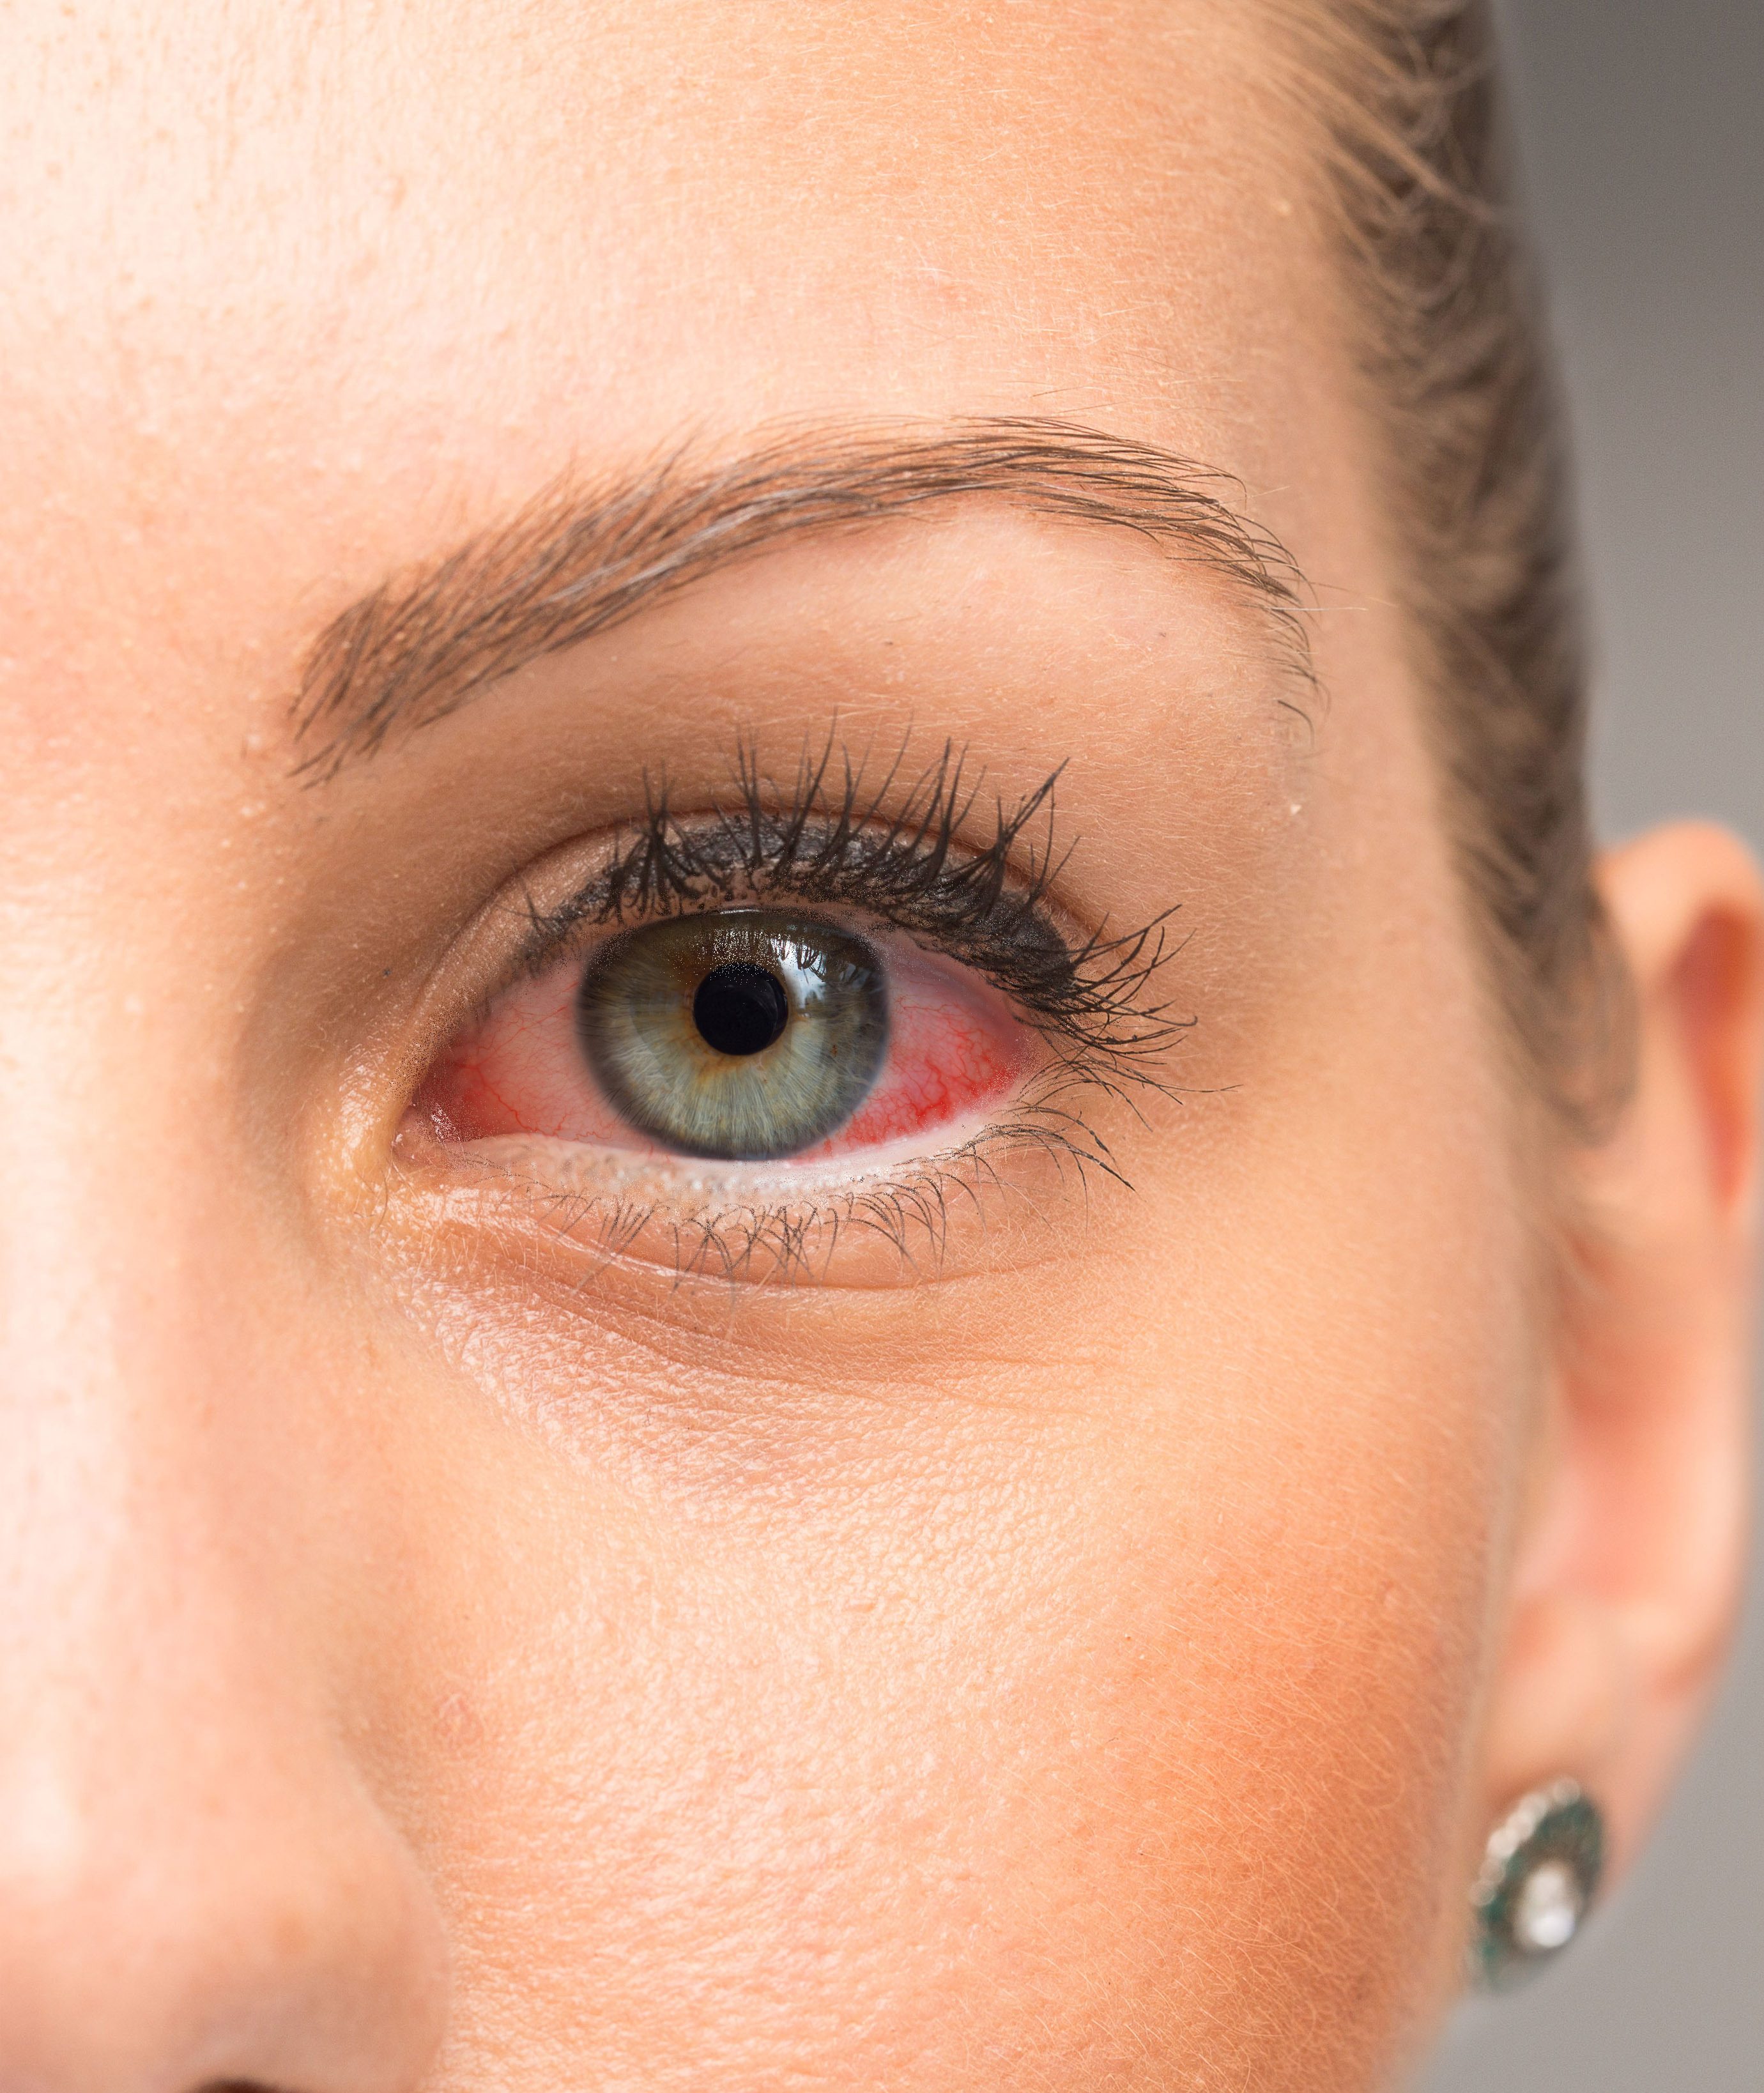 اسباب احمرار العين عدة وأبرزها الحساسية أو التعرض لغبار - اليوم السابع